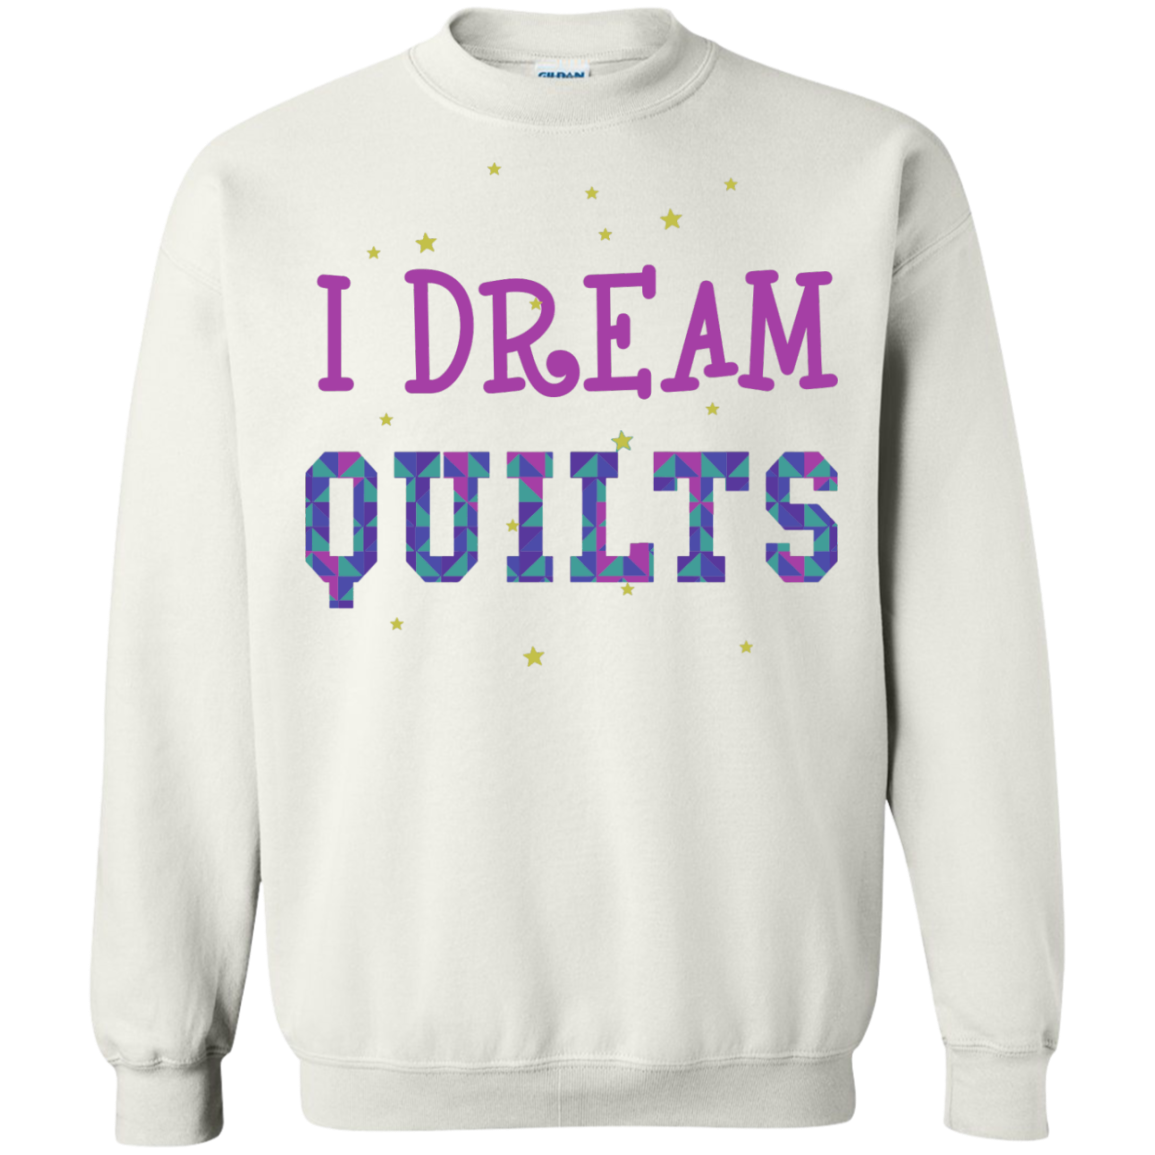 I Dream Quilts Crewneck Sweatshirt - Crafter4Life - 4